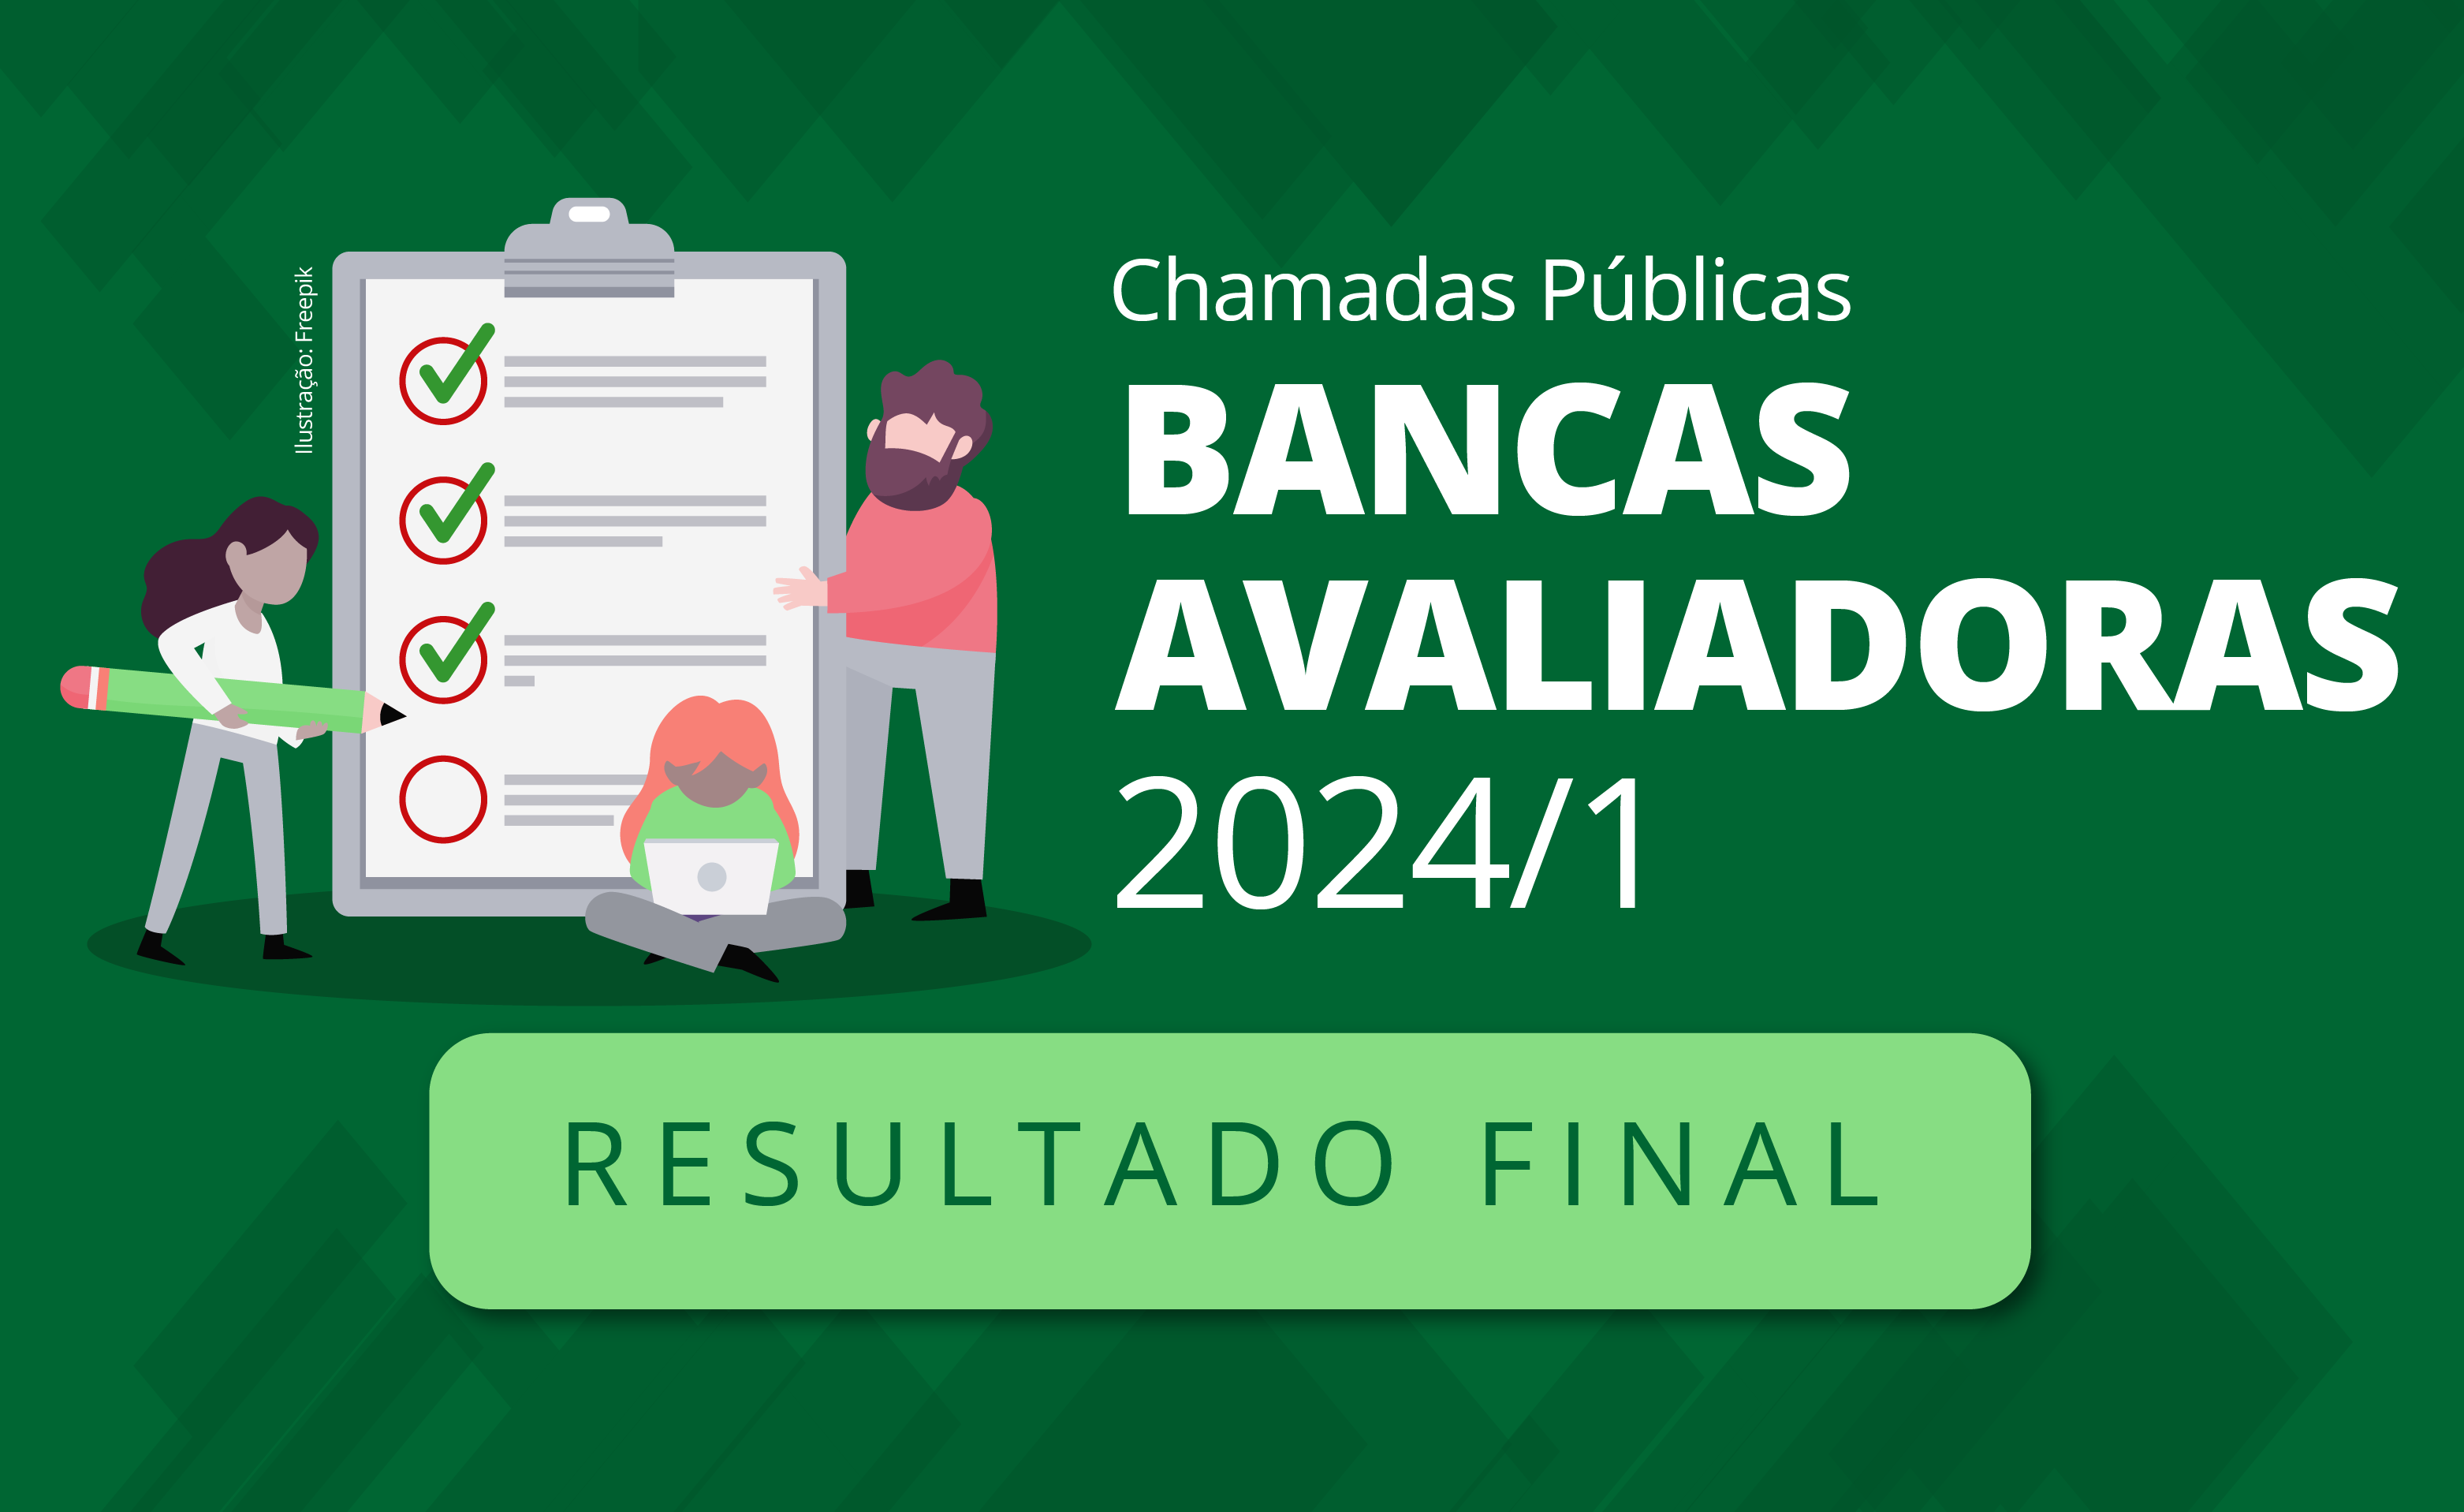 Bancas-Avaliadoras-2024-1-Resultado.png - 261.62 kb